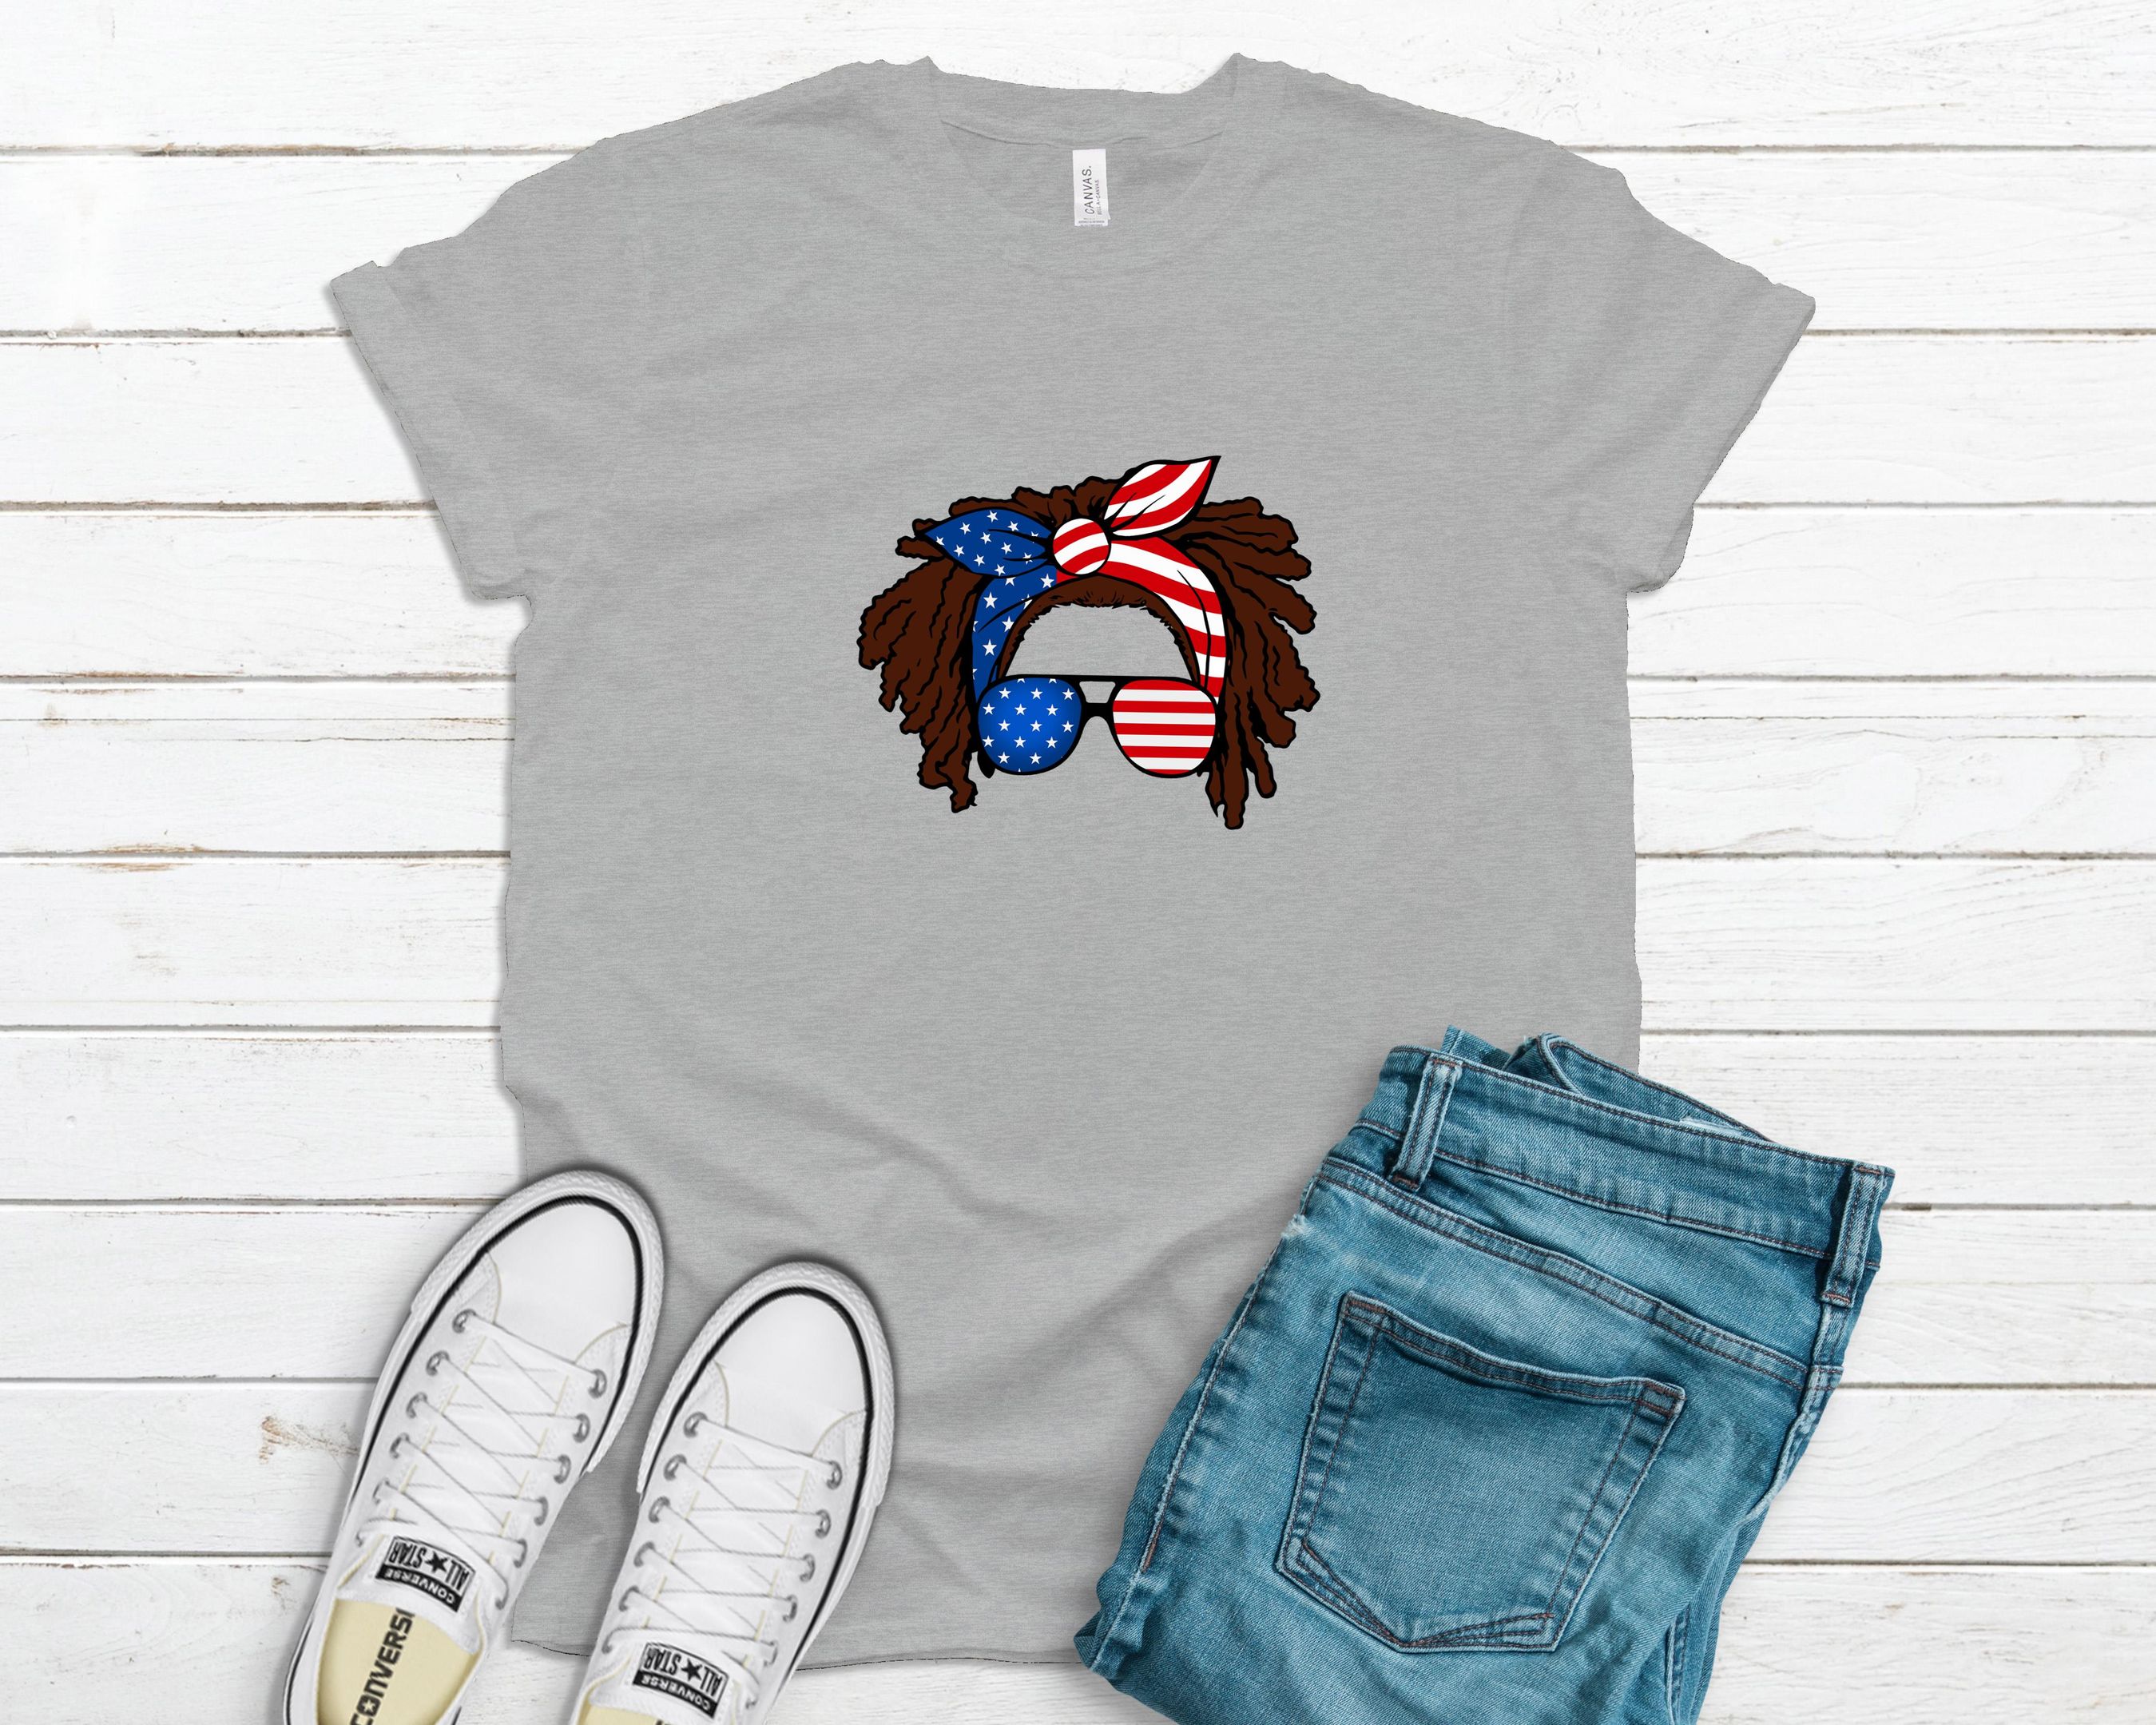 Loc’D American Girl Shirt, Black Girl Shirt, Locs Girl Shirt, Dreadlocks Girl Shirt